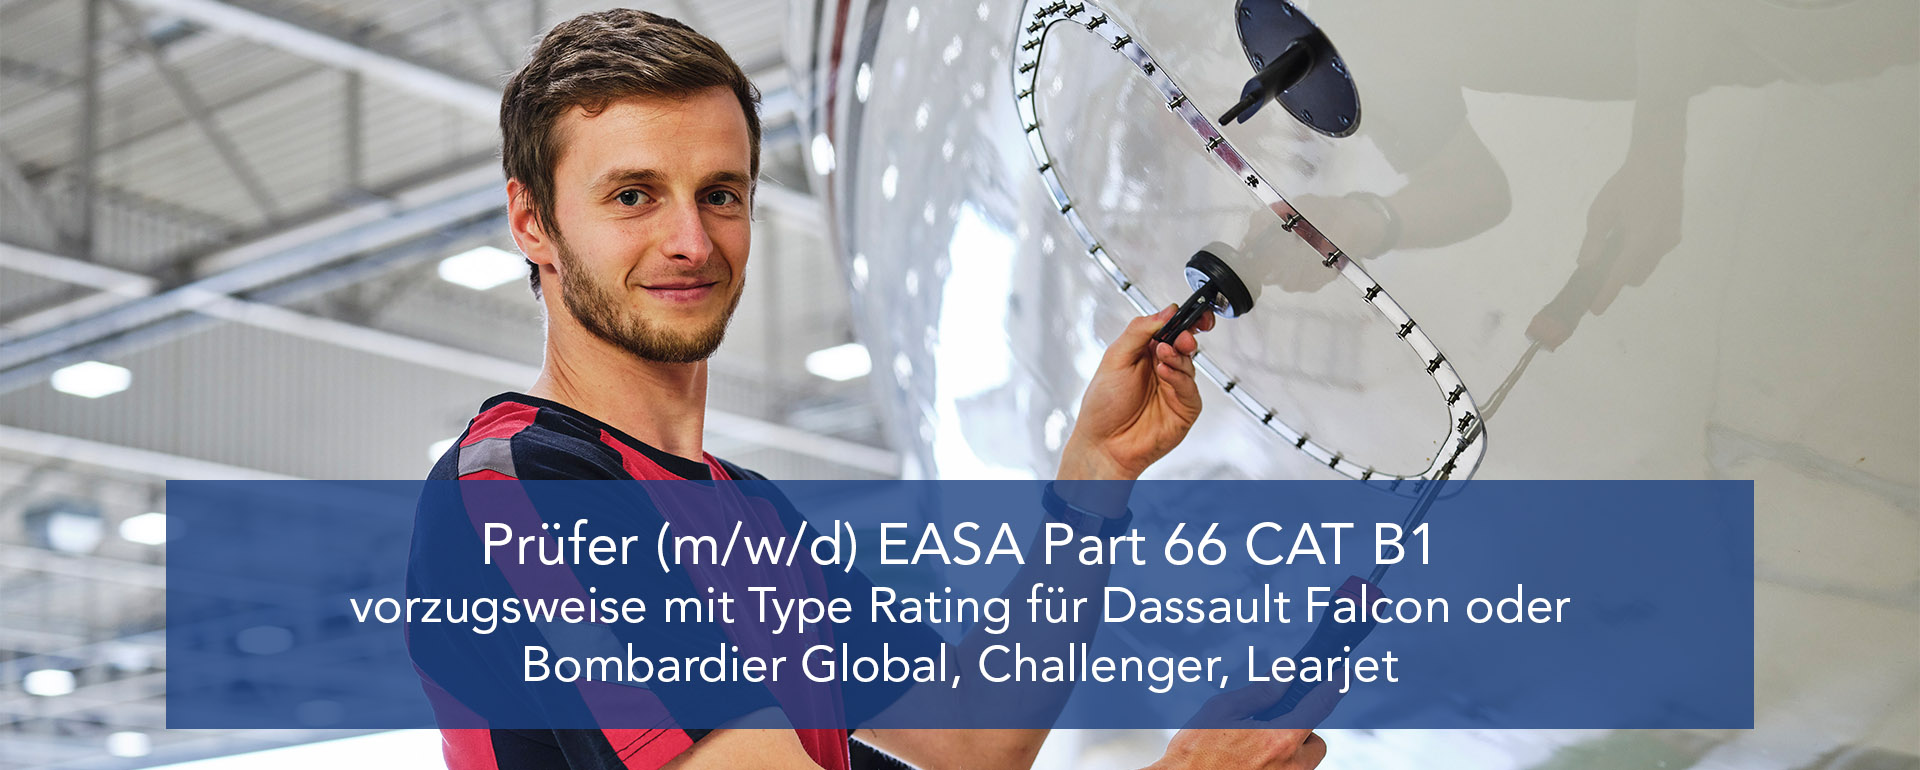 Prüfer (m/w/d) EASA Part 66 CAT B1 in EDDN vorzugsweise mit Type Rating für Dassault Falcon oder Bombardier Global, Challenger, Learjet 